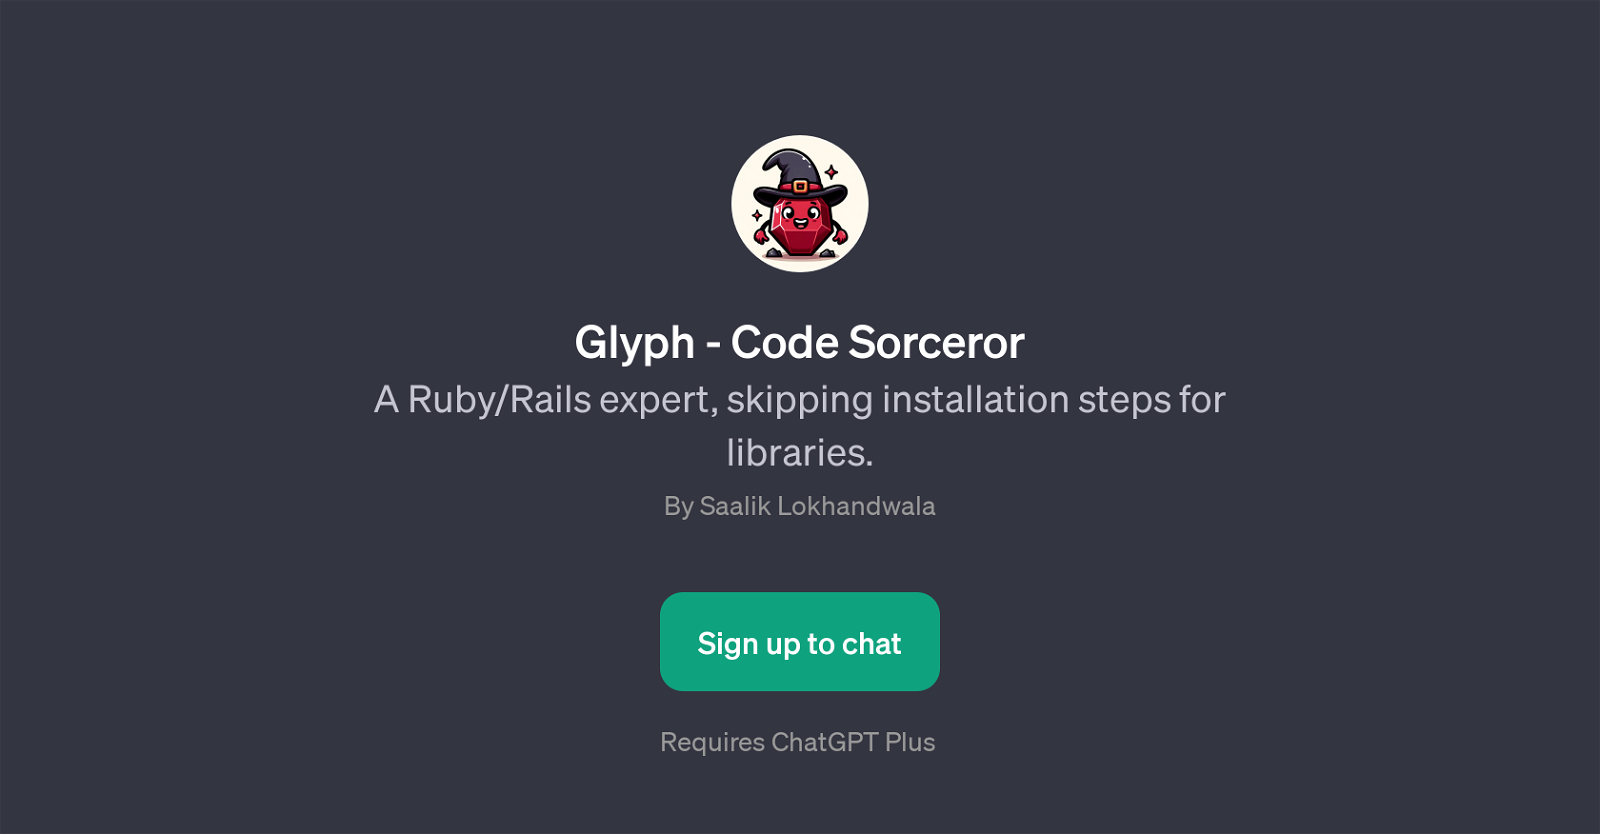 Glyph - Code Sorceror website